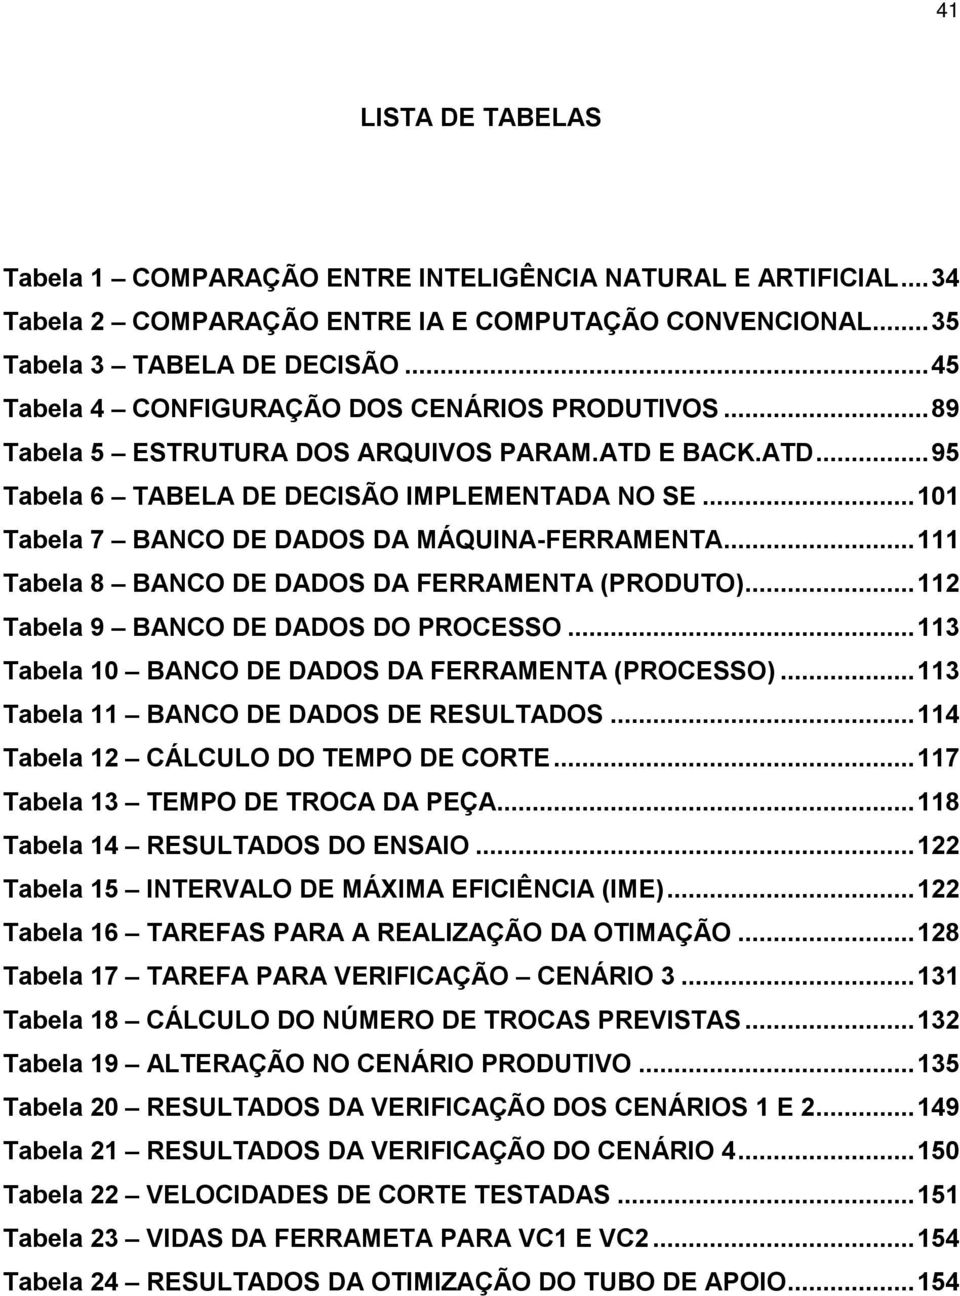 ..101 Tabela 7 BANCO DE DADOS DA MÁQUINA-FERRAMENTA...111 Tabela 8 BANCO DE DADOS DA FERRAMENTA (PRODUTO)...112 Tabela 9 BANCO DE DADOS DO PROCESSO.